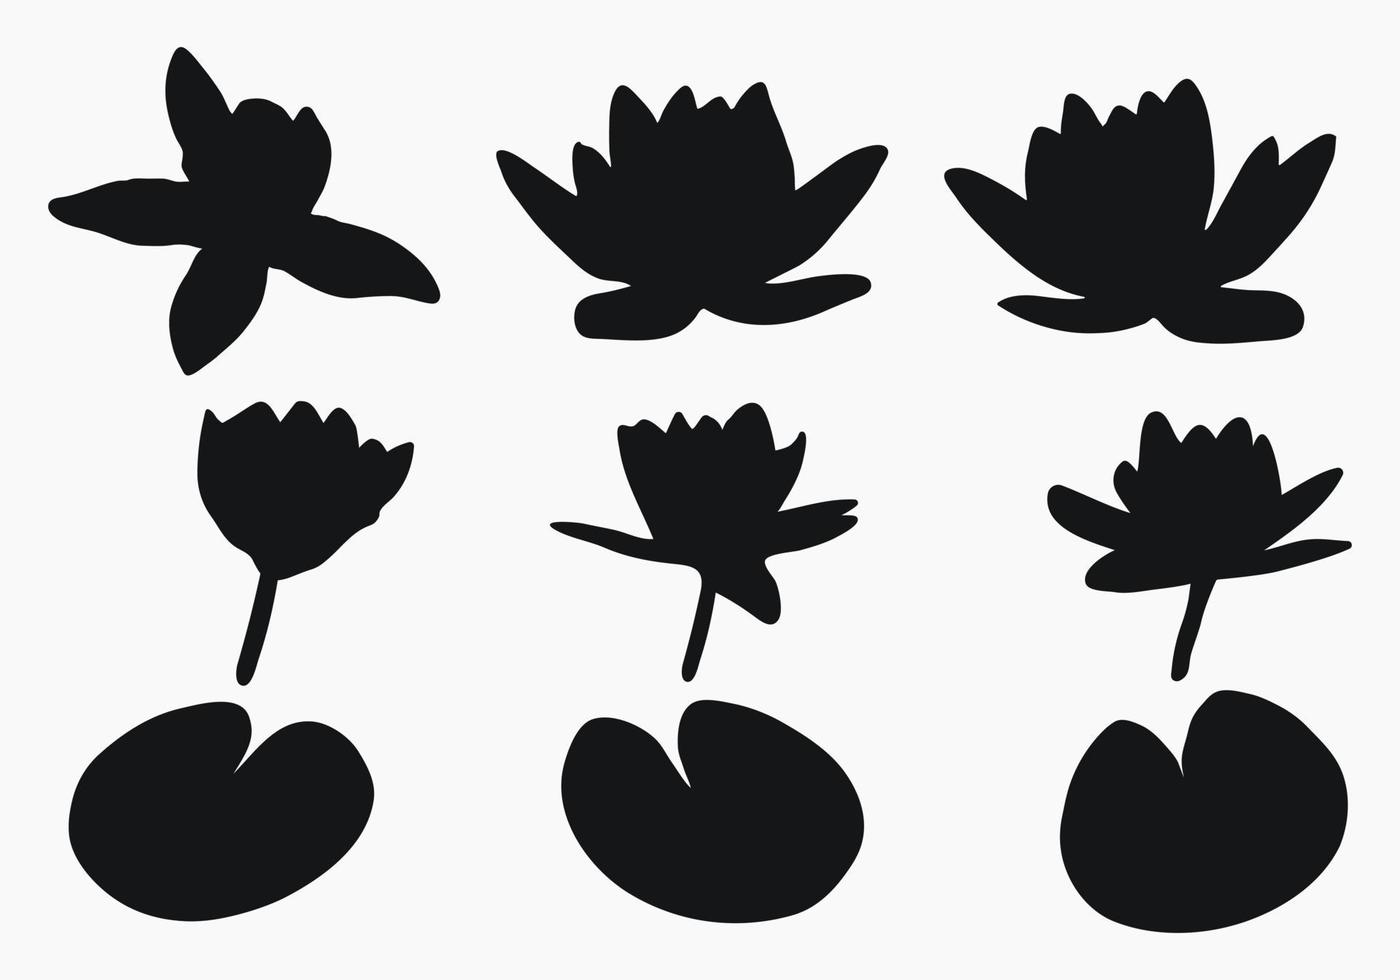 verklig modern silhuetter växter, örter. teckning blommor vatten lilja, nymfaea. platt design konst design mall. vektor